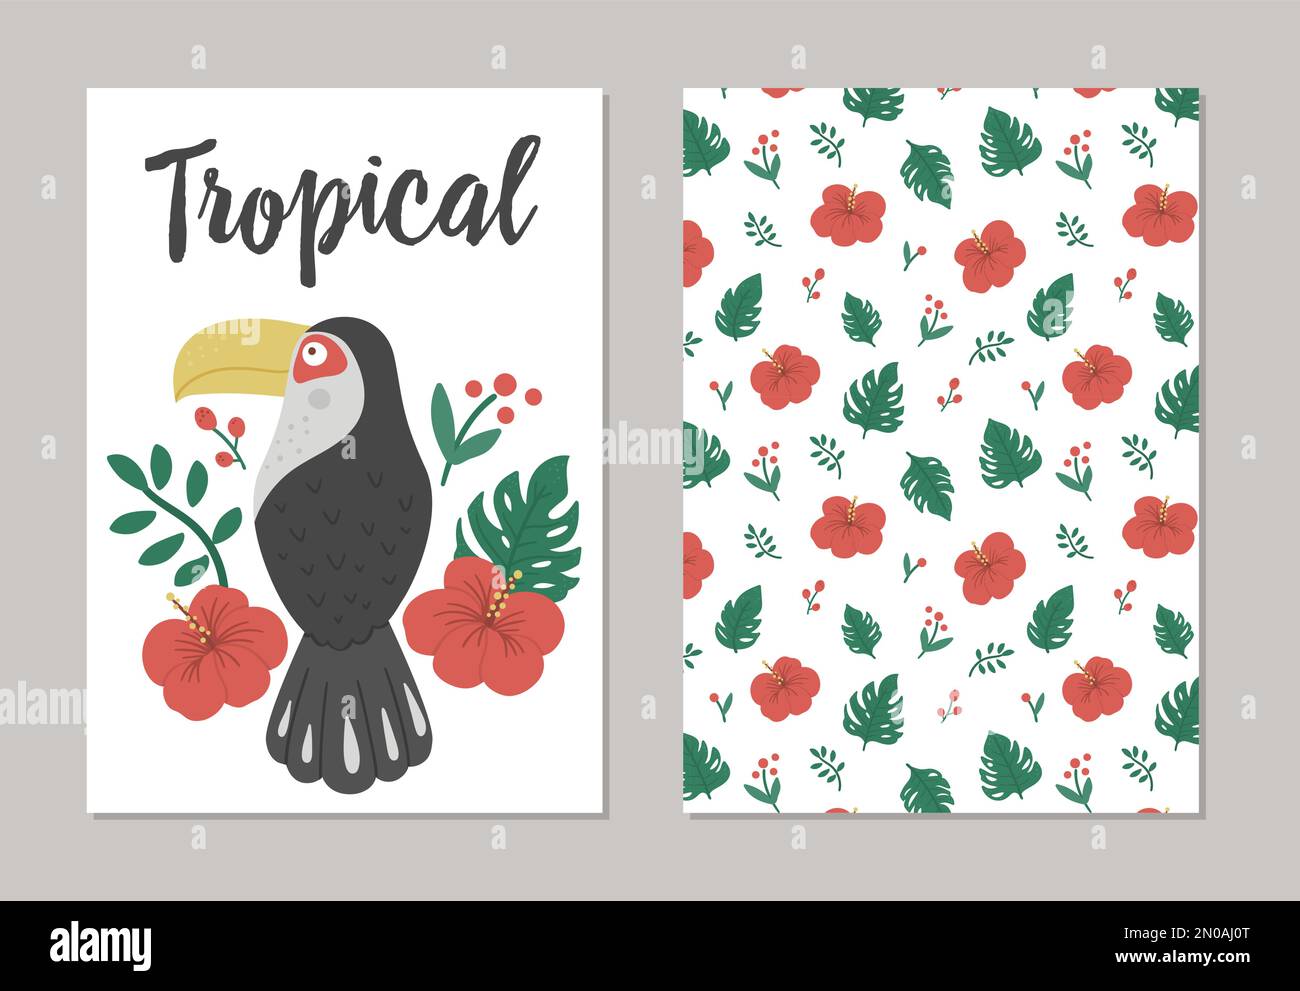 Set aus Vektordesigns für den Sommer mit tropischen Vögeln, Pflanzen und Blumen. Lustige, exotische Geschenkgutscheinvorlagen mit niedlichen Dschungelfiguren. Toucan-Witz Stock Vektor